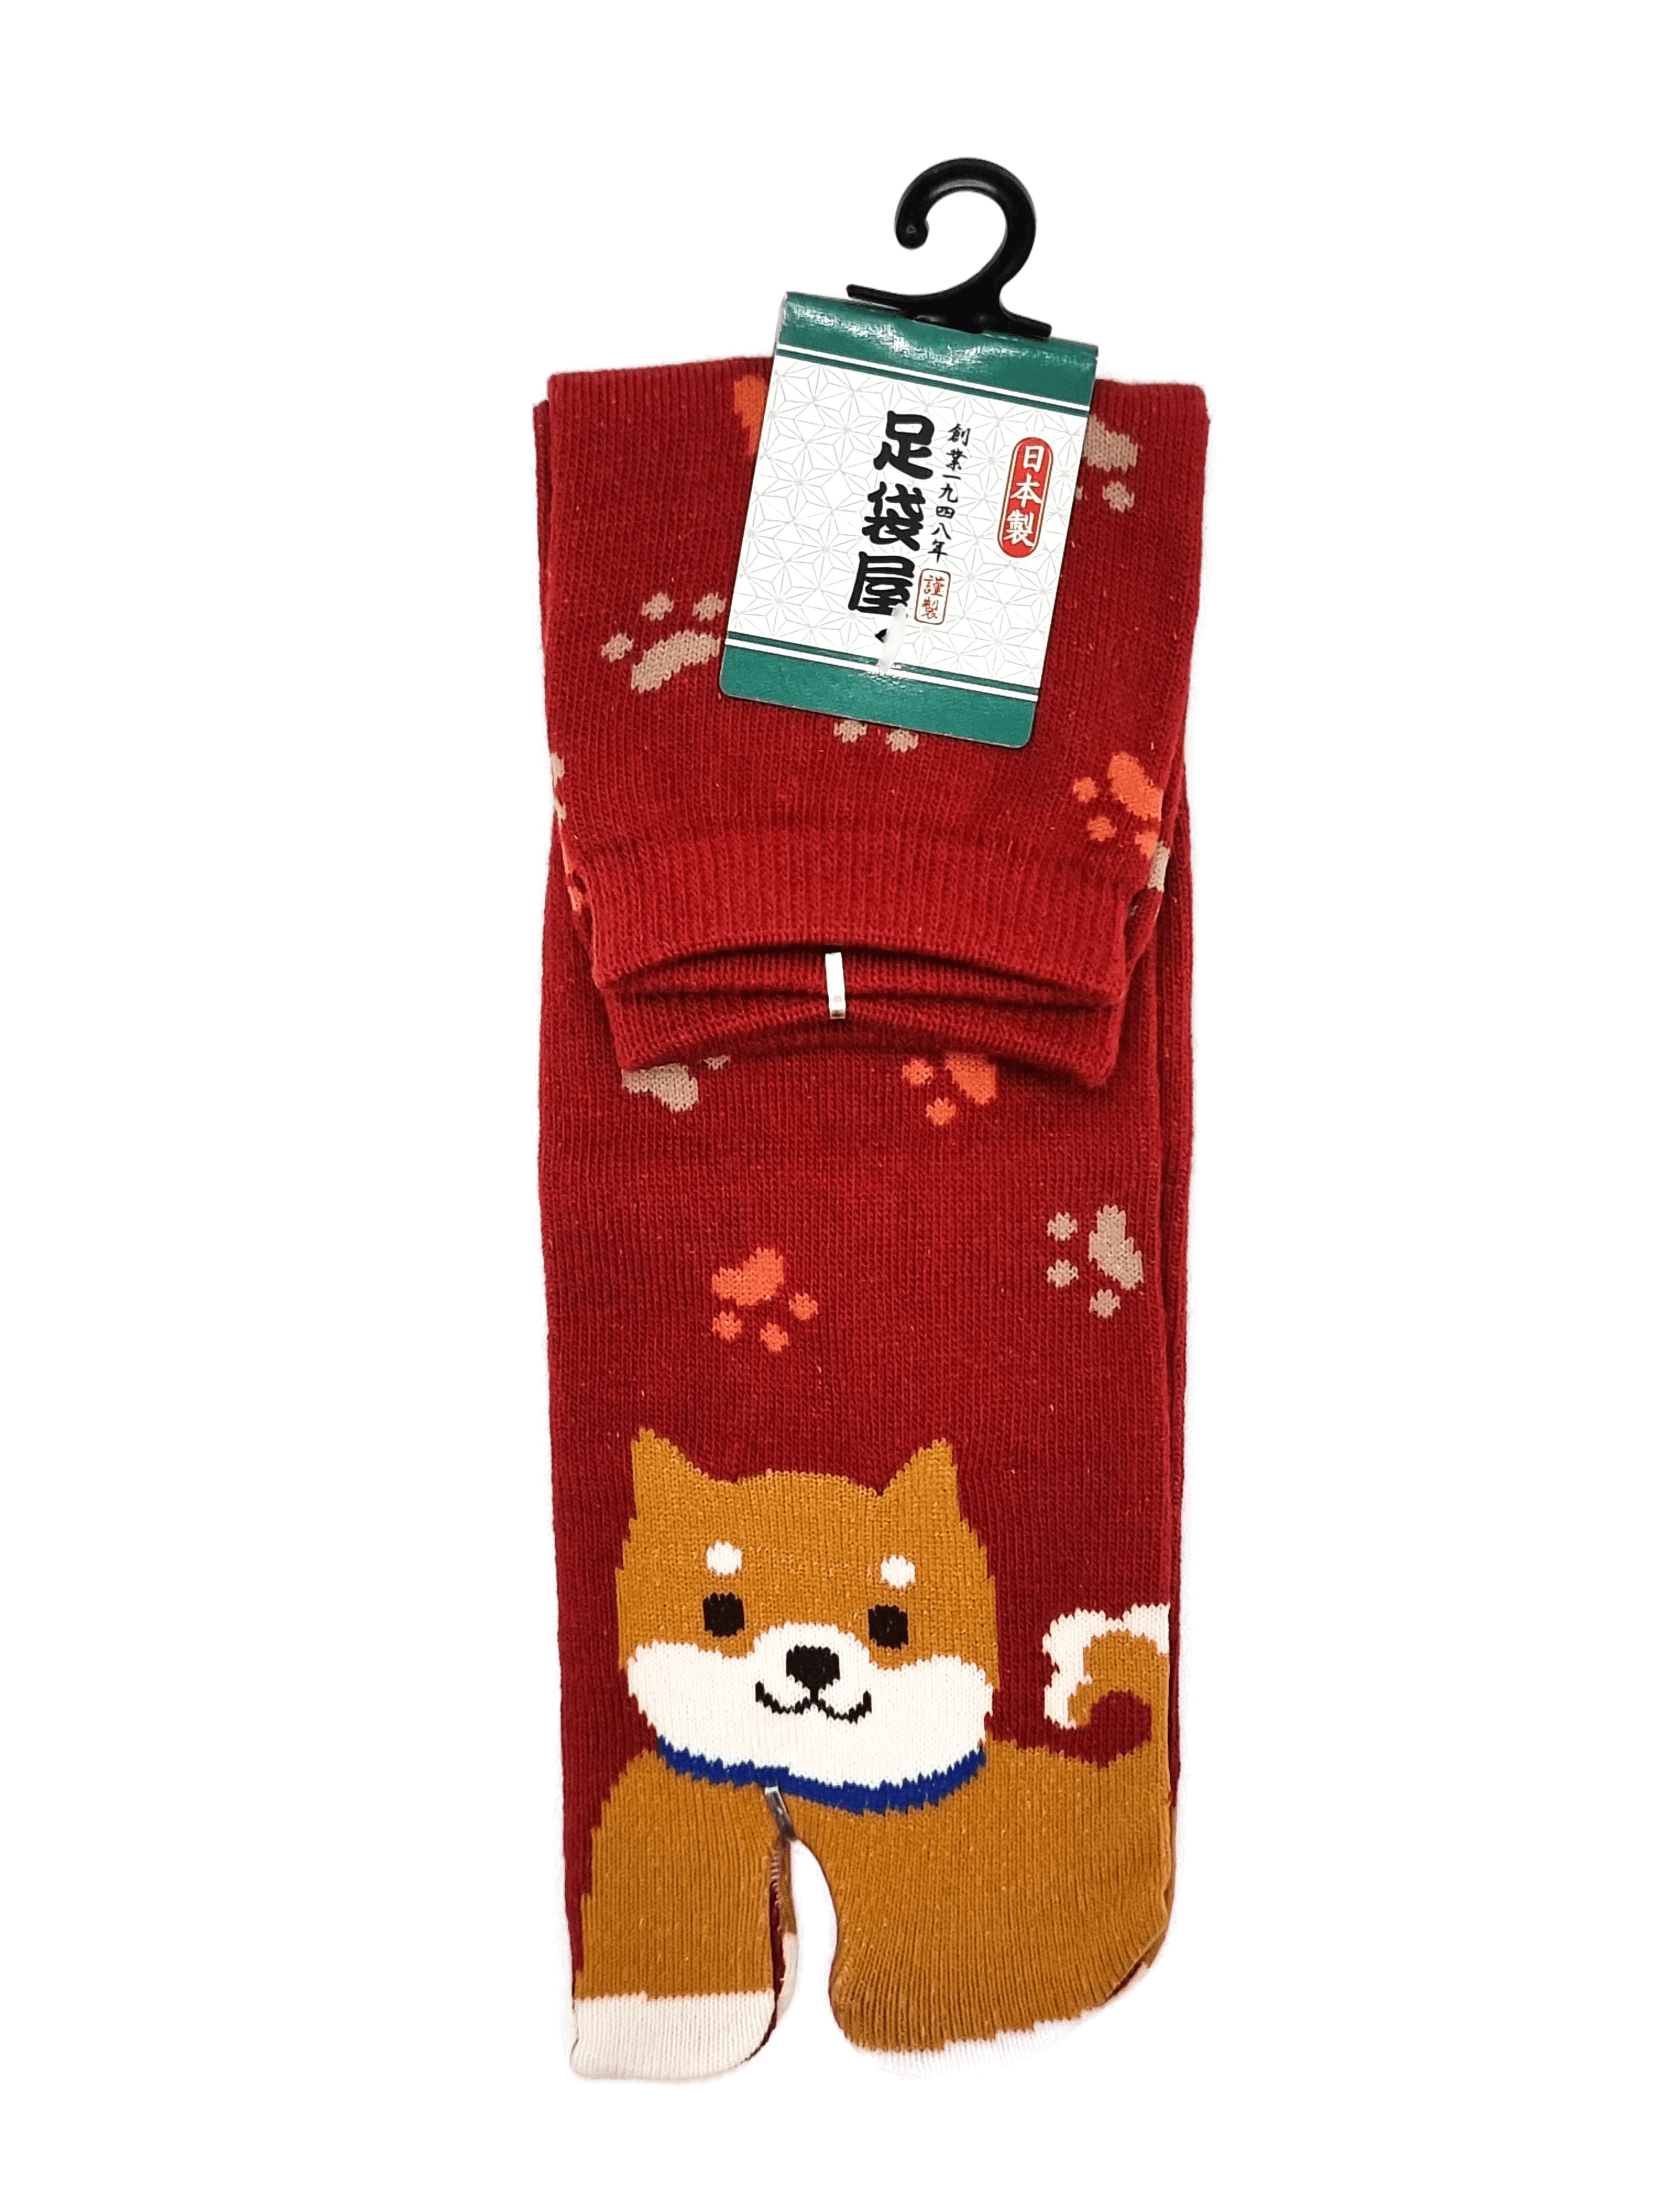 Linke braune Tabi Socke mit Shiba Inu in rot